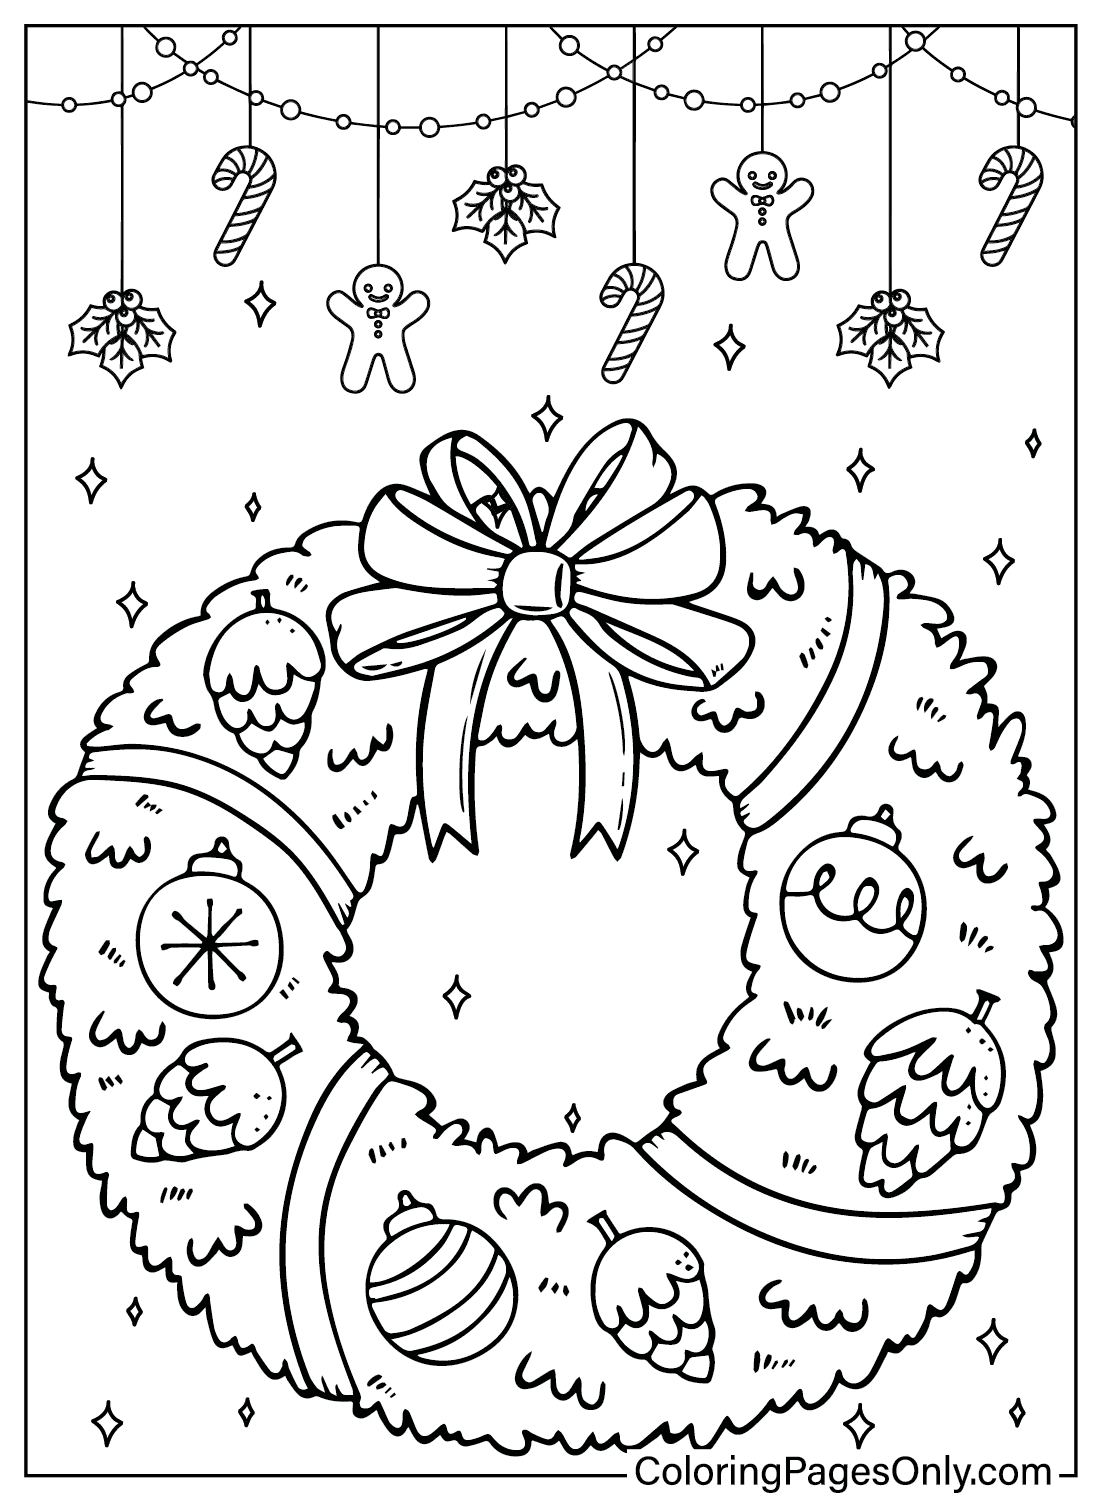 Página para colorear de corona de Navidad gratuita de Corona de Navidad